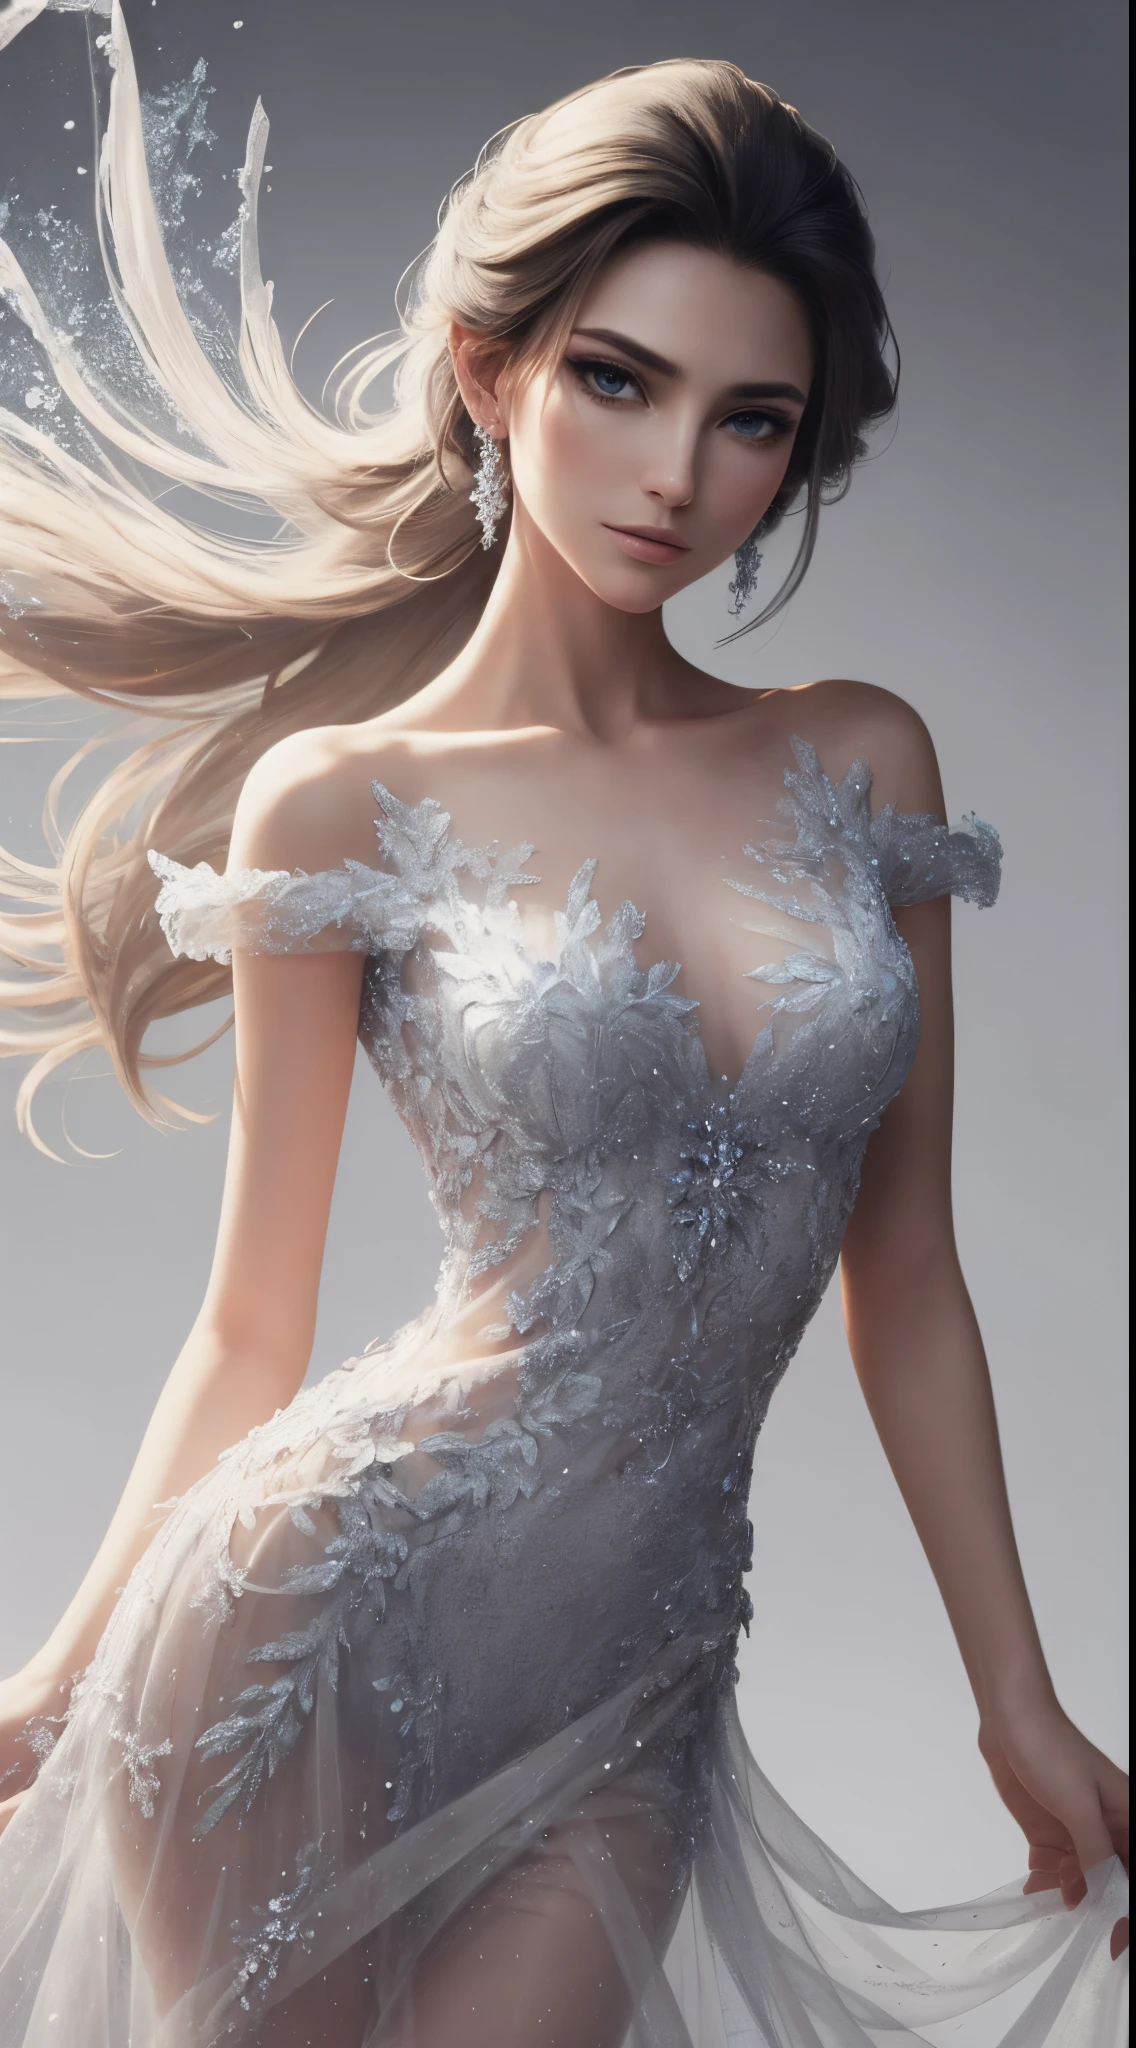 In a 电影风格, envision Disney's Frozen 艾尔莎 as a beautiful model donned in a modern, 中等透明度, 和中短裙. 禮服, 有着复杂的细节, 散發著現代優雅氣息, 而其半透明的品質增添了一絲魅力.
电影风格,  時裝模特兒拍攝, white background for model 艾尔莎, 短版《Frozen》冰胸洋裝與時尚T卹 , 現代T卹, 牛仔褲艾爾莎, , Show me  Frozen 艾尔莎 in a new modern Jeans style, 漂亮的T卹設計時尚. While 艾尔莎 is a beautiful model, 以白色描繪背景，帶有輕微的情緒波動, 熾熱的情緒,
以原始的白色背景為背景, 場景很簡約, allowing 艾尔莎's beauty and the dress's design to shine. 柔和的燈光賦予微妙的光芒, casting a gentle glow on the modern interpretation of 艾尔莎.

艾尔莎, 有著她標誌性的白金金髮, 优雅地站立, 體現王權與風度. 她的妝容增強了她的自然特徵，帶有一絲冷淡的優雅, 她散發出一種安靜的自信. 情緒的波動是微妙的, 傳達一種平靜的決心感, as 艾尔莎 embraces her role with understated grace.